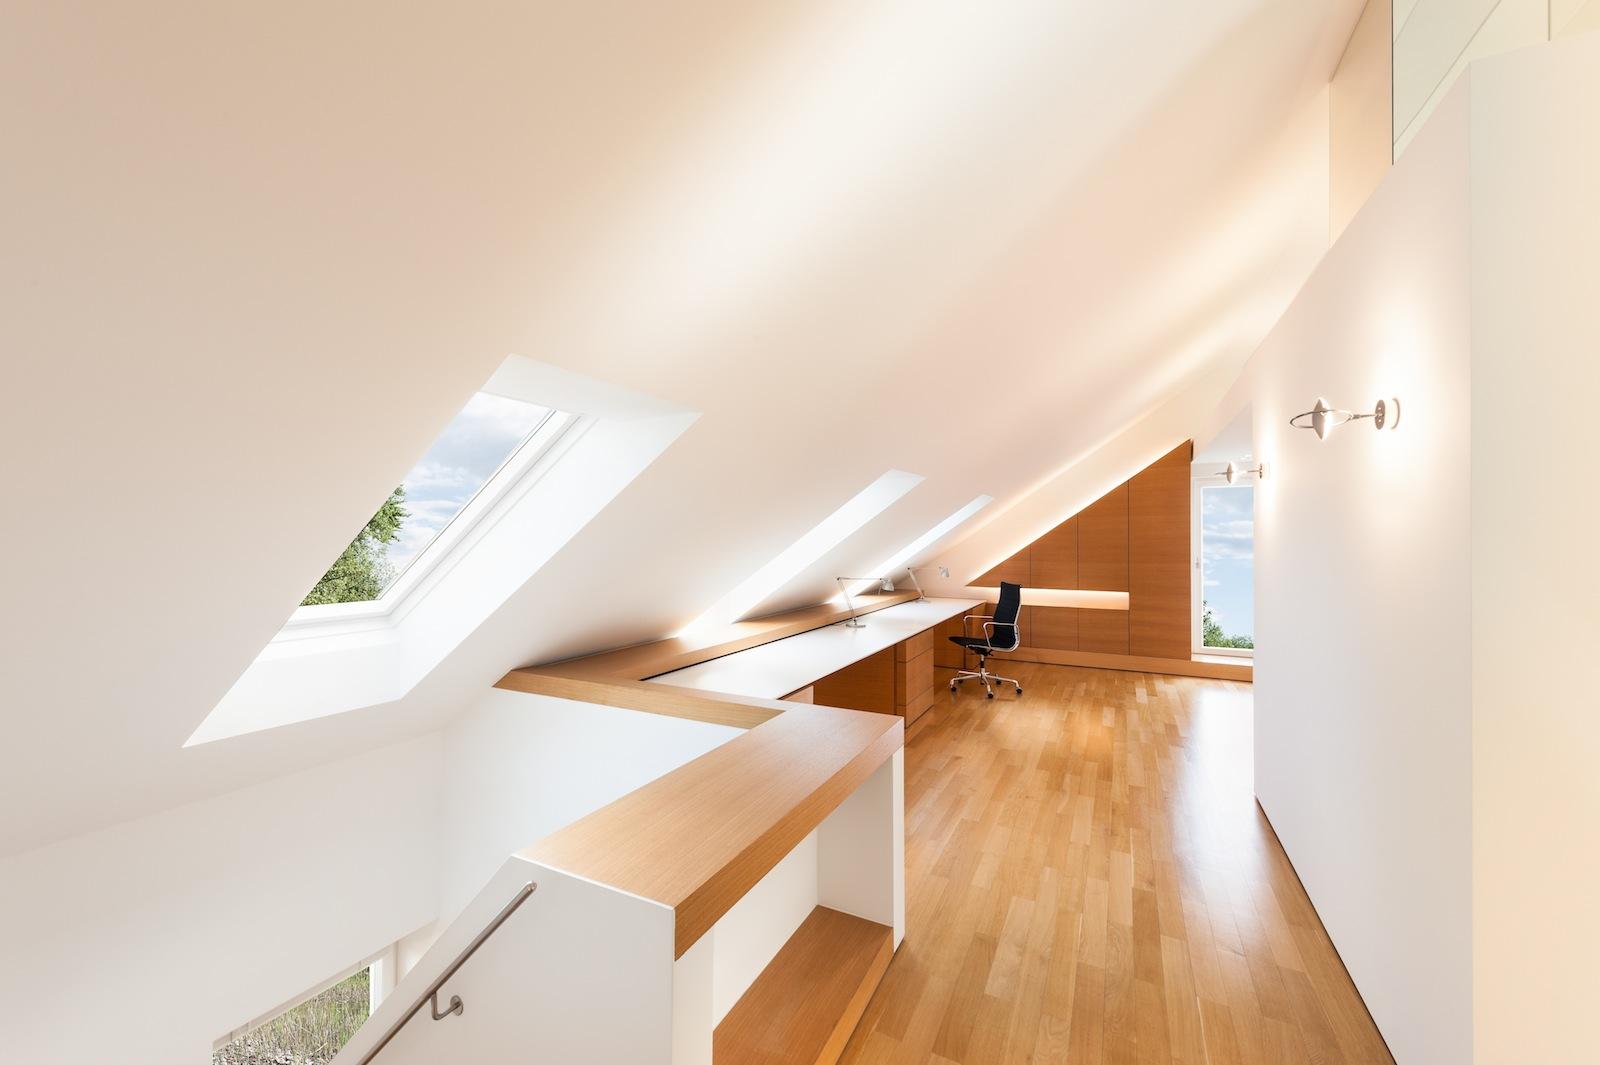 Dachloft #dachschräge #arbeitsecke #dachschrägenfenster ©www.ingold.de